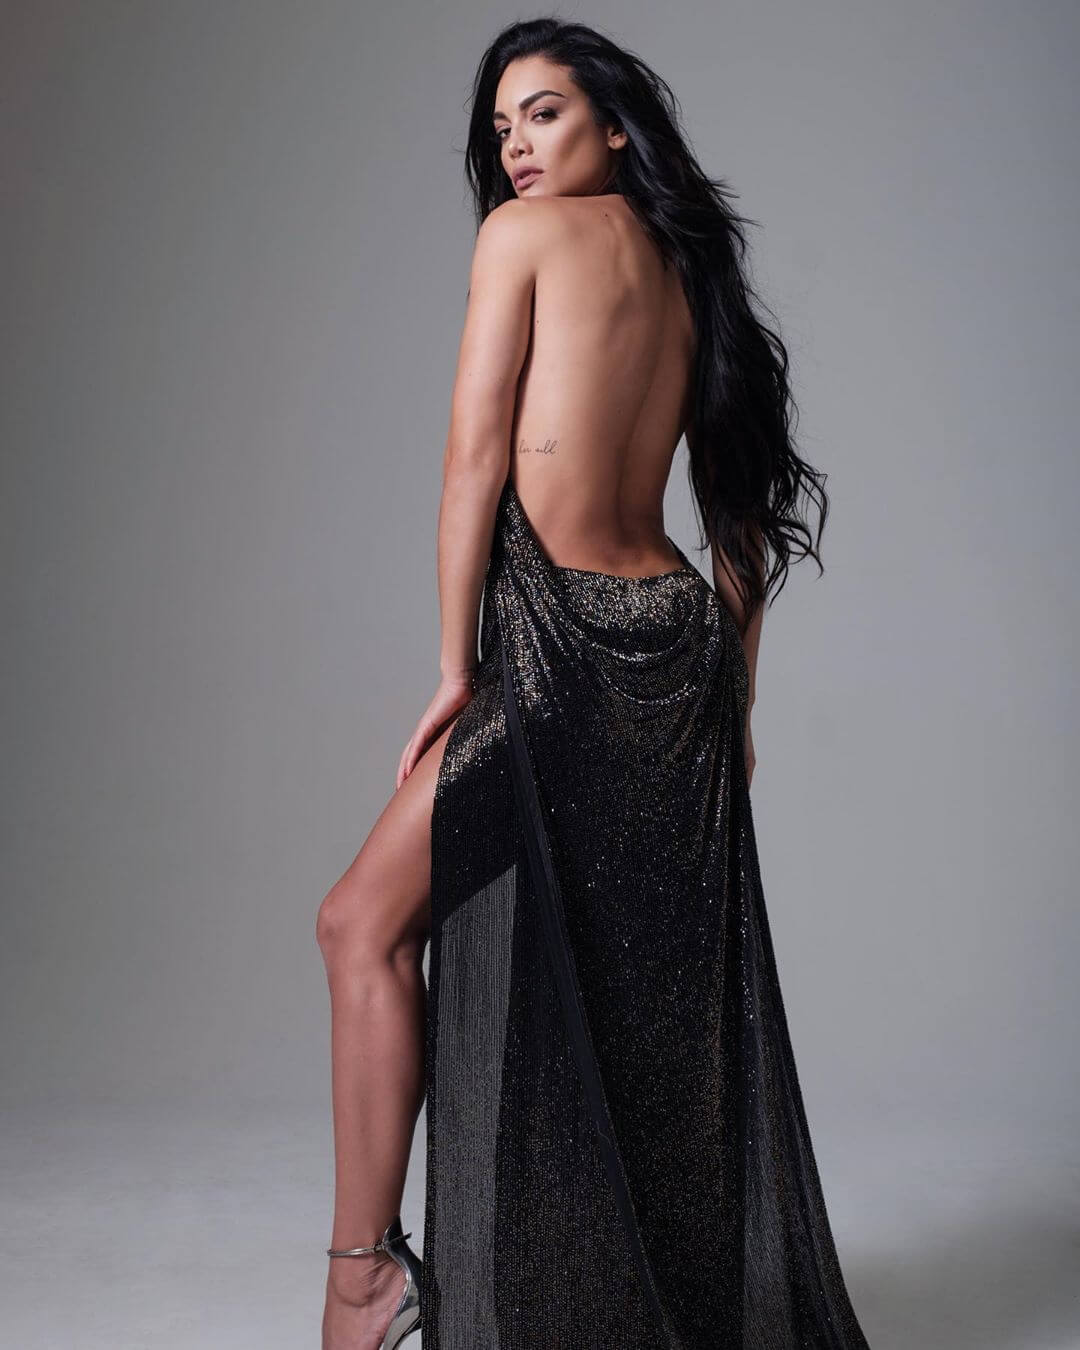 The Hottest Zuleyka Rivera Photos Around The Net.